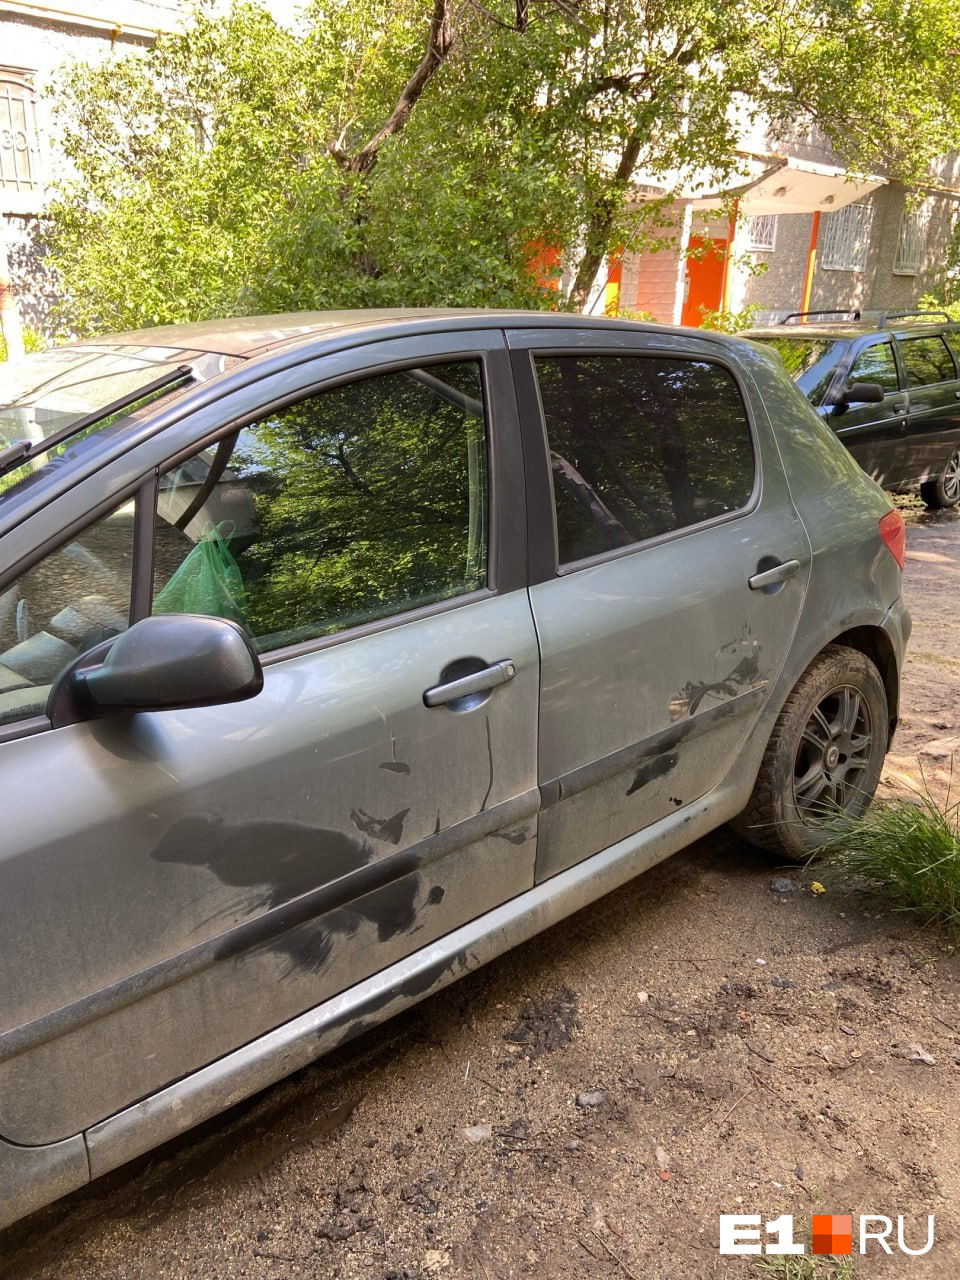 Стало известно, за что гаишники жестко задержали в Екатеринбурге «голубчика» на синей BMW